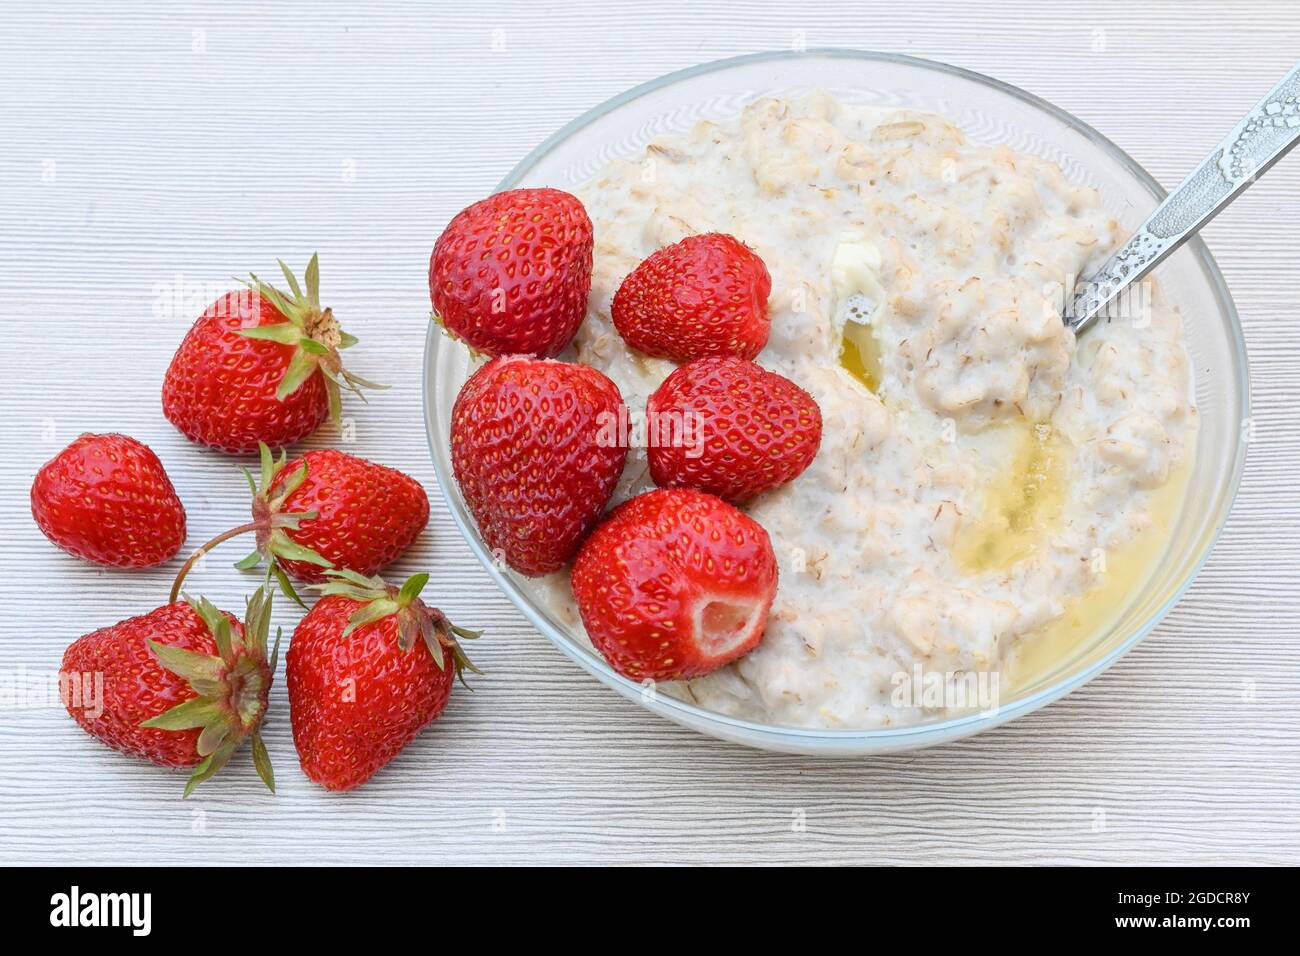 Une assiette de porridge de flocons d'avoine et de fraises juteuses mûres sur une table blanche Banque D'Images